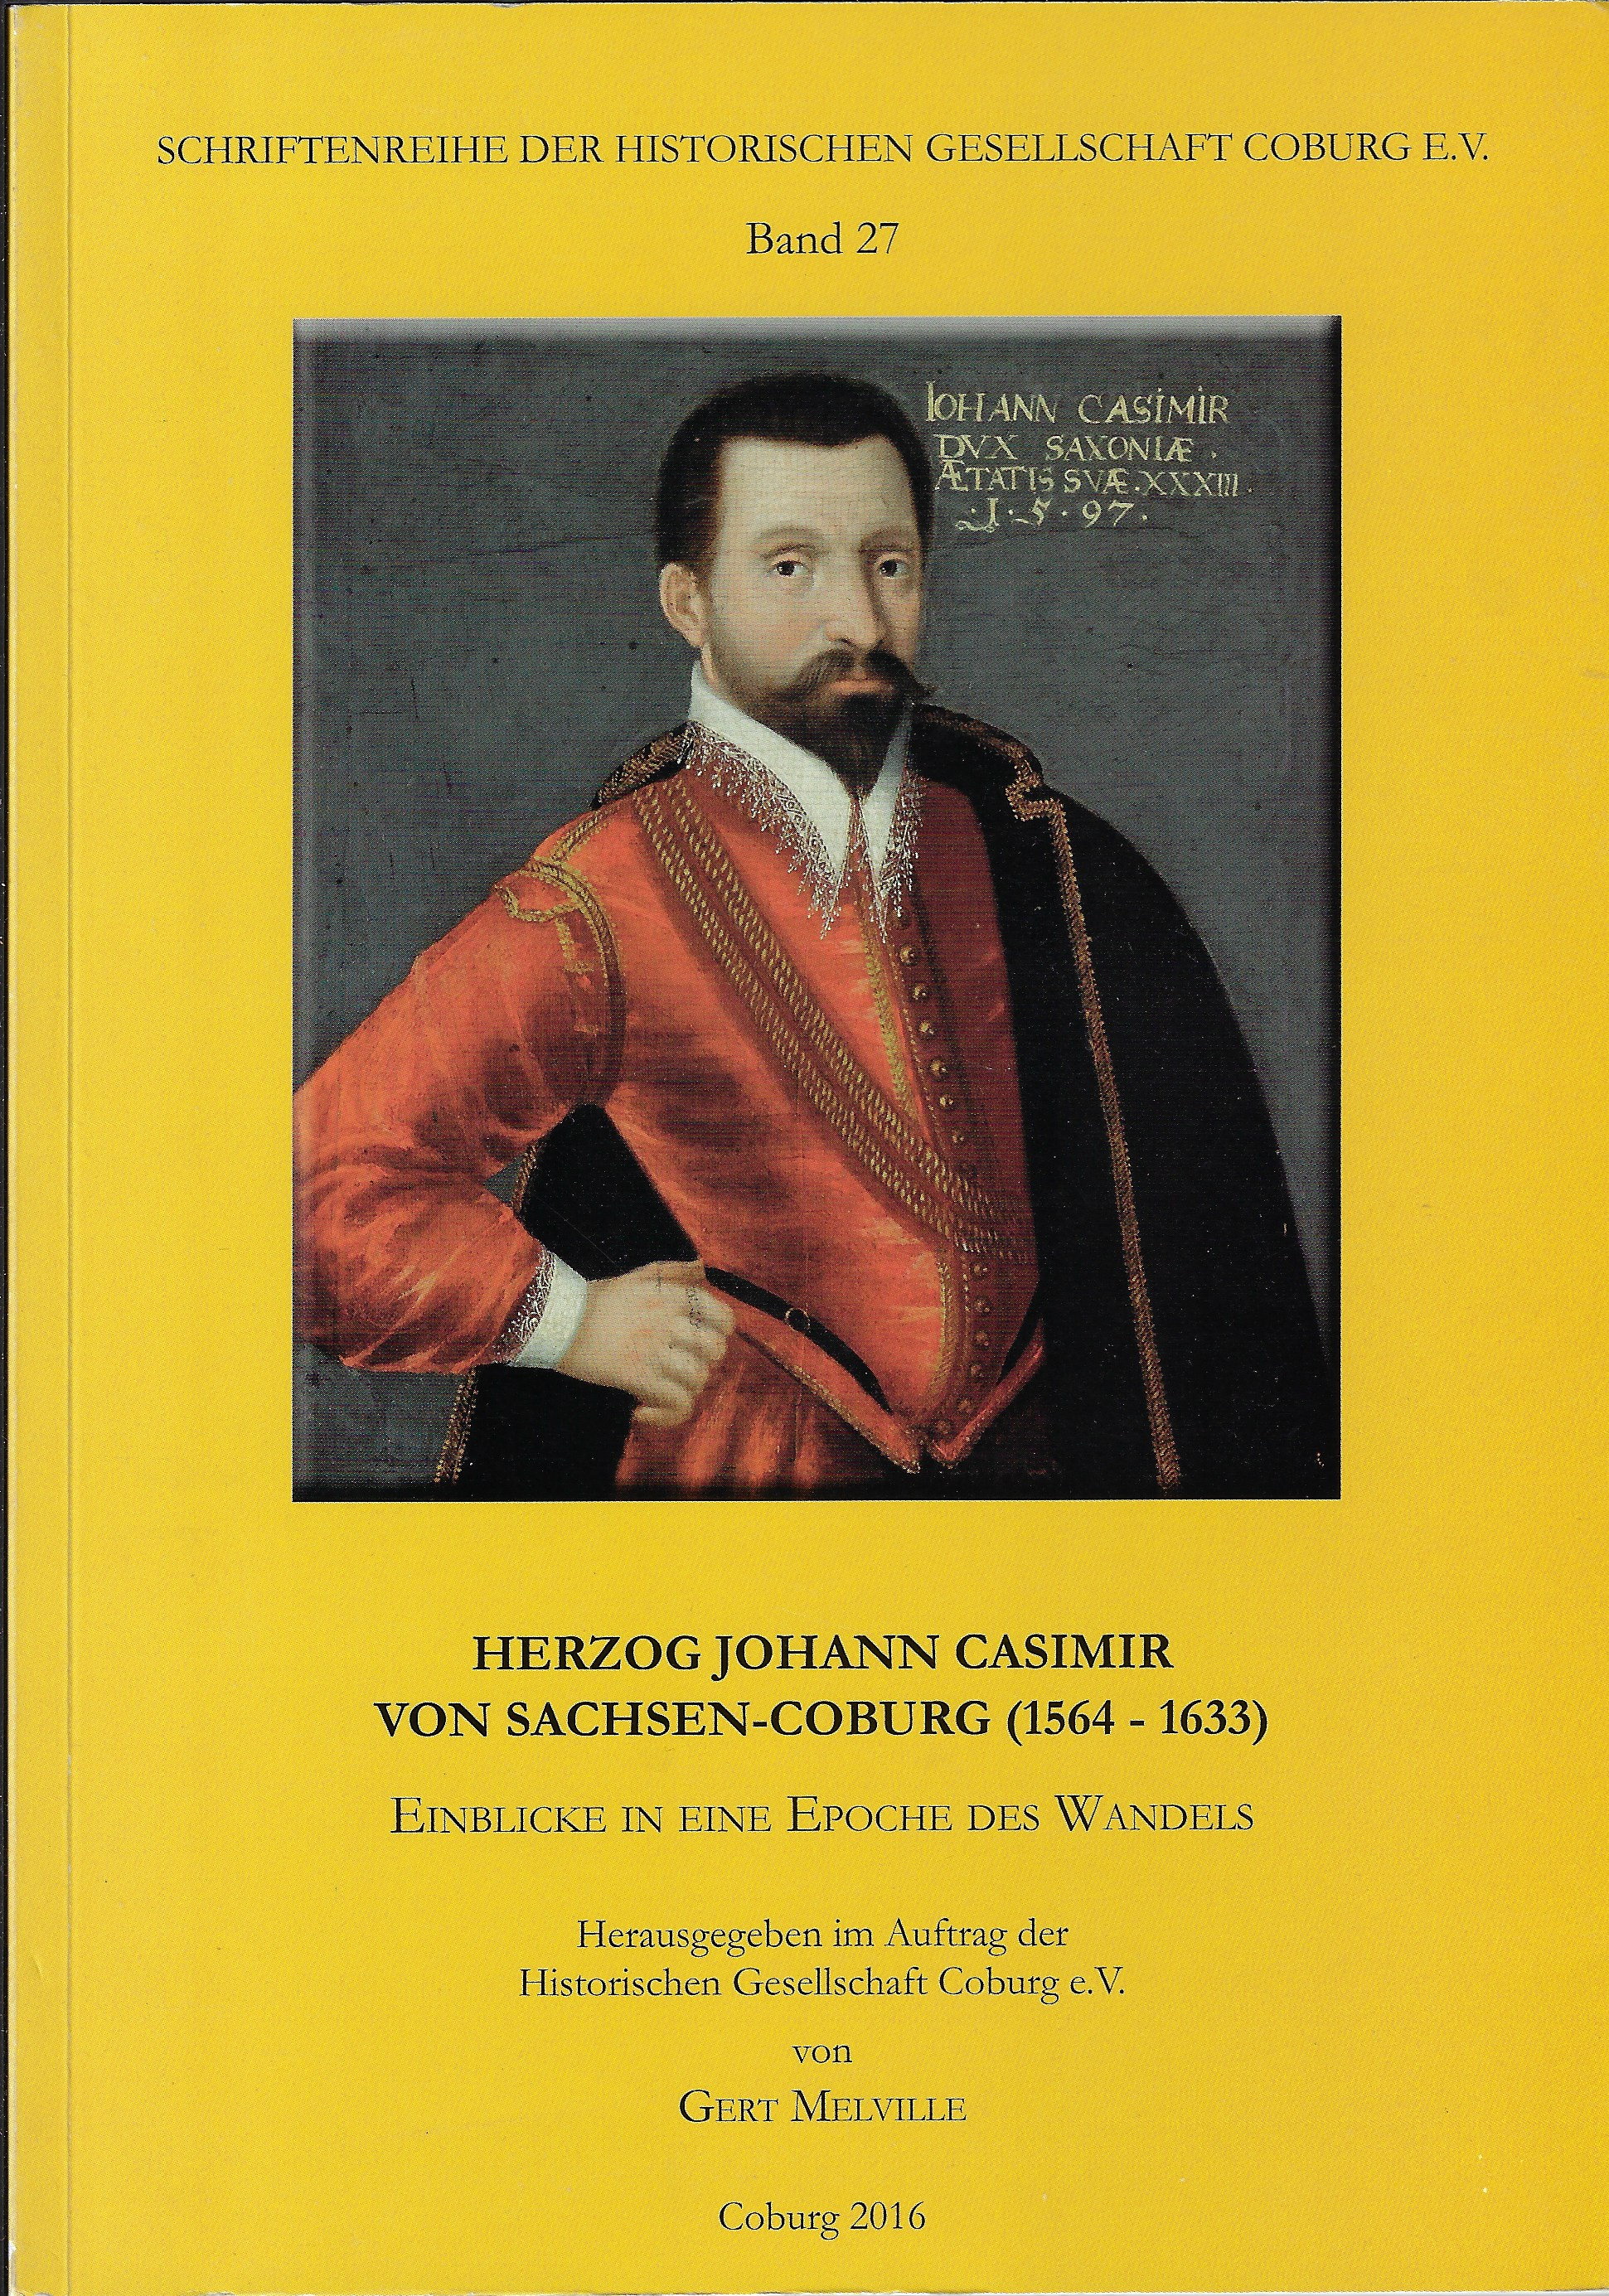 Herzog Johann Casimir von Sachsen-Coburg (1564-1633)